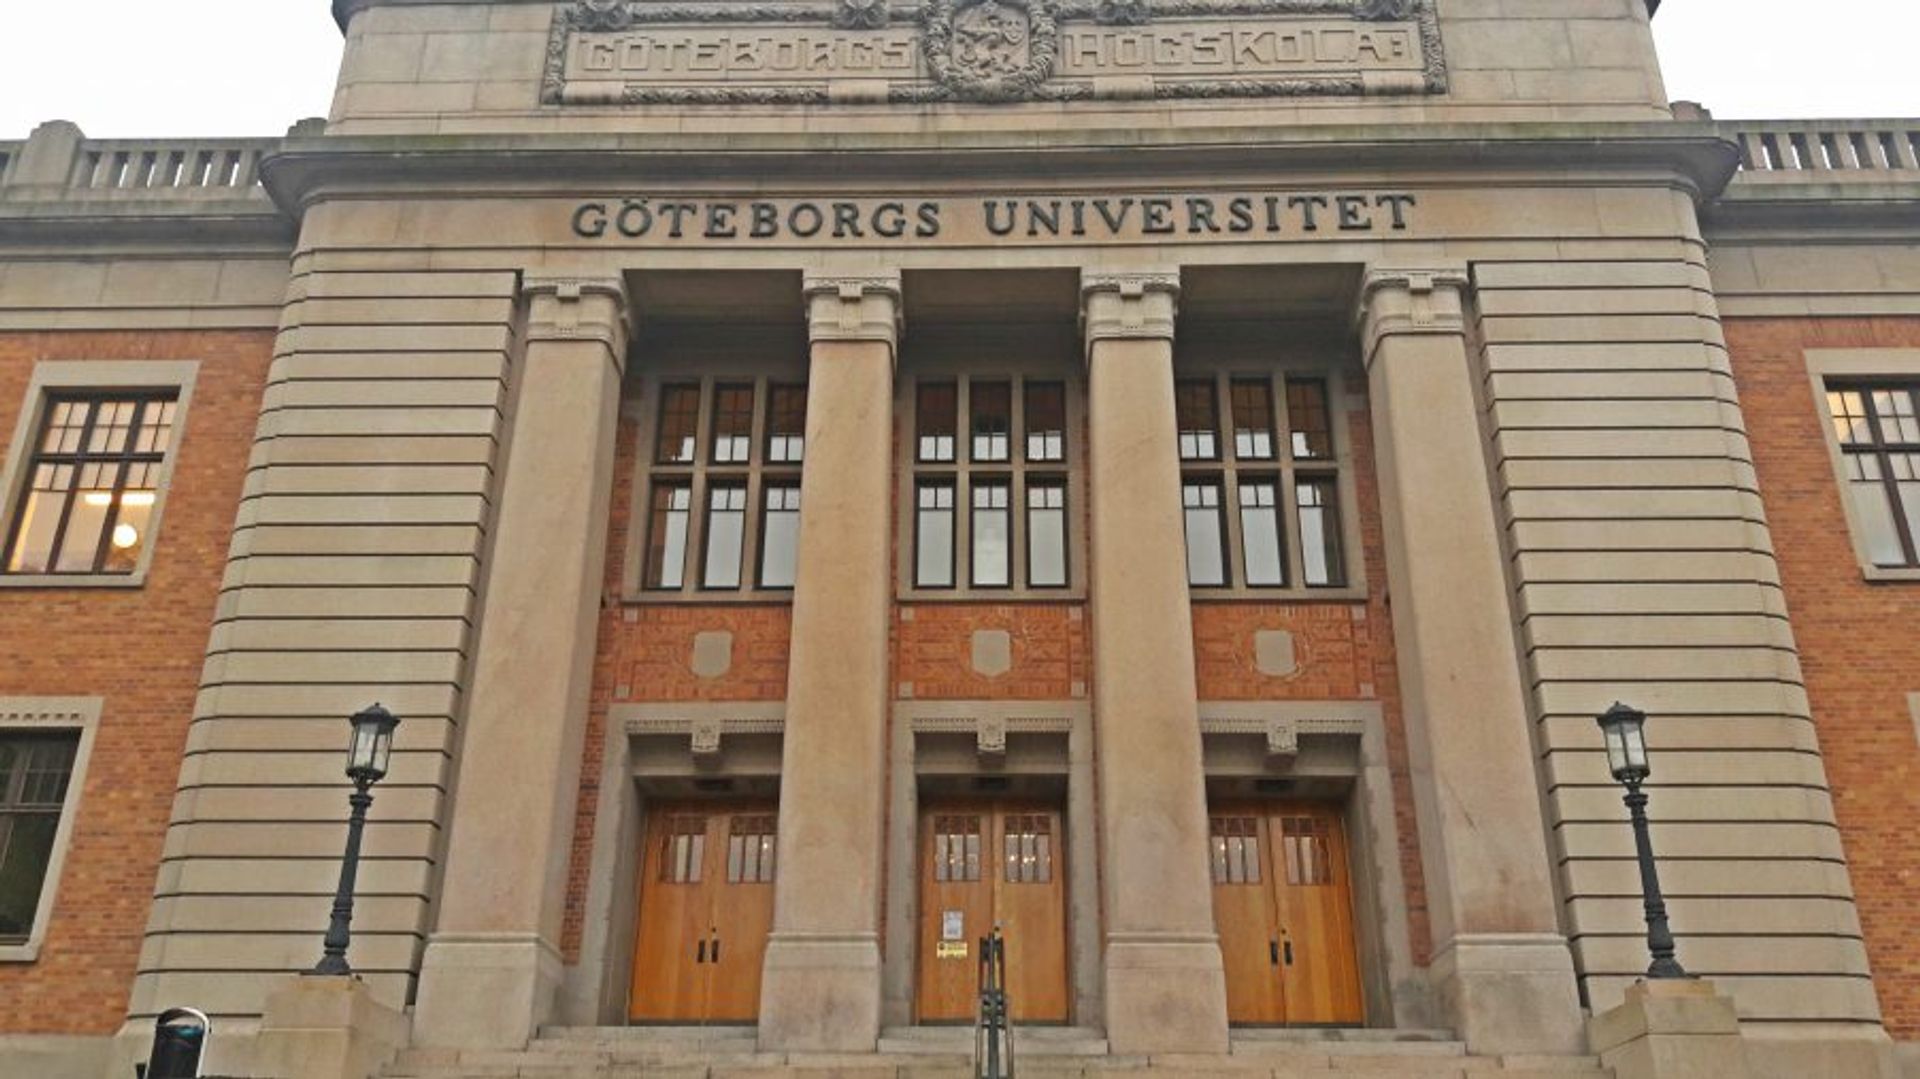 Gothenburg University